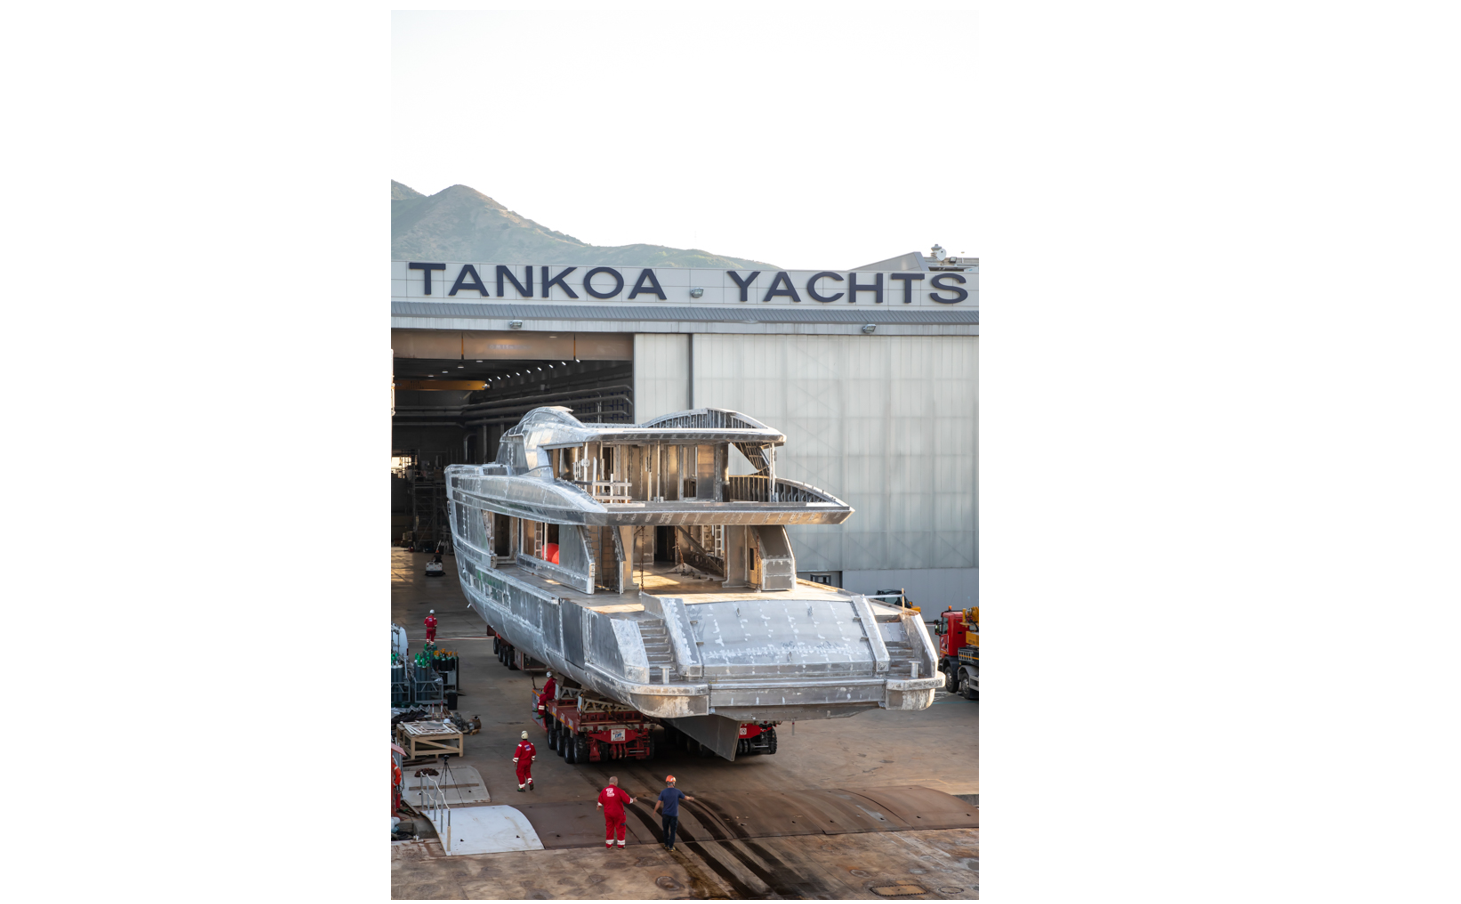 Prevista a febbraio 2022 la consegna del quarto 50m Tankoa, ibrido e interamente in alluminio